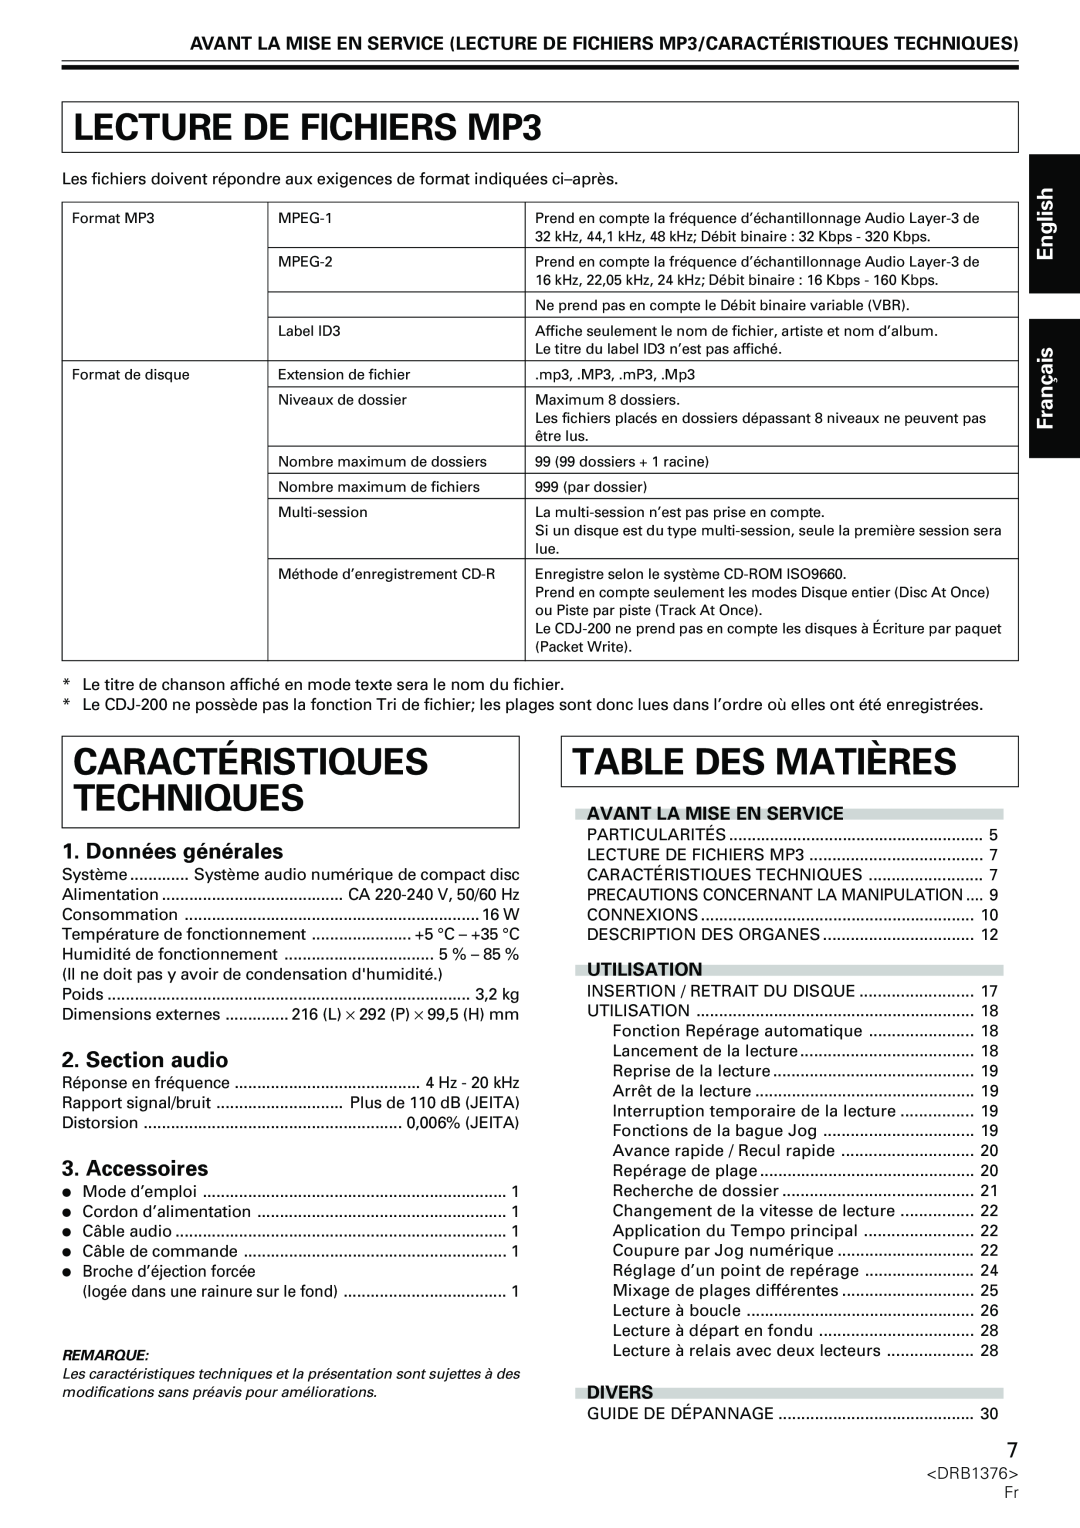 Pioneer CDJ-200 manual LECTURE DE FICHIERS MP3, Caractéristiques Techniques, Table Des Matières, Section audio, Accessoires 